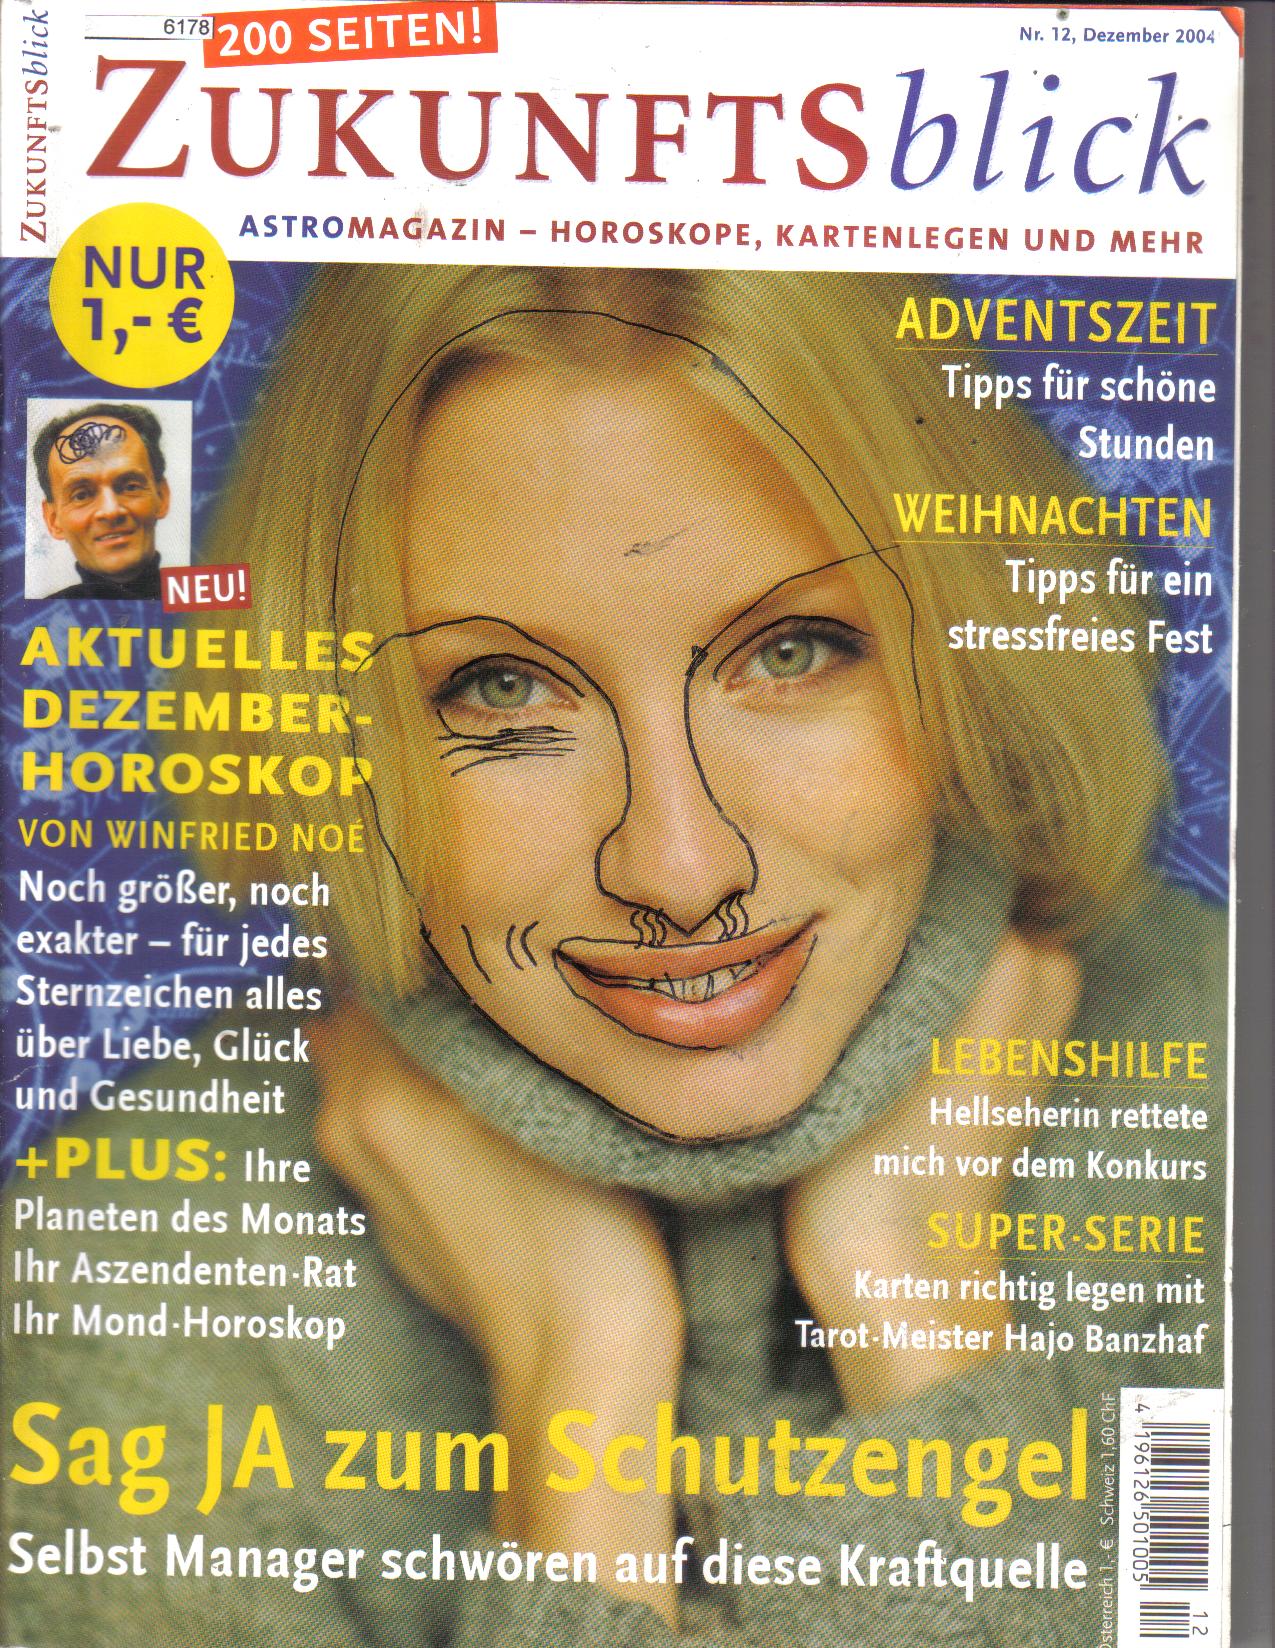 Zukunftsblick 12 /2004  Astromagazin